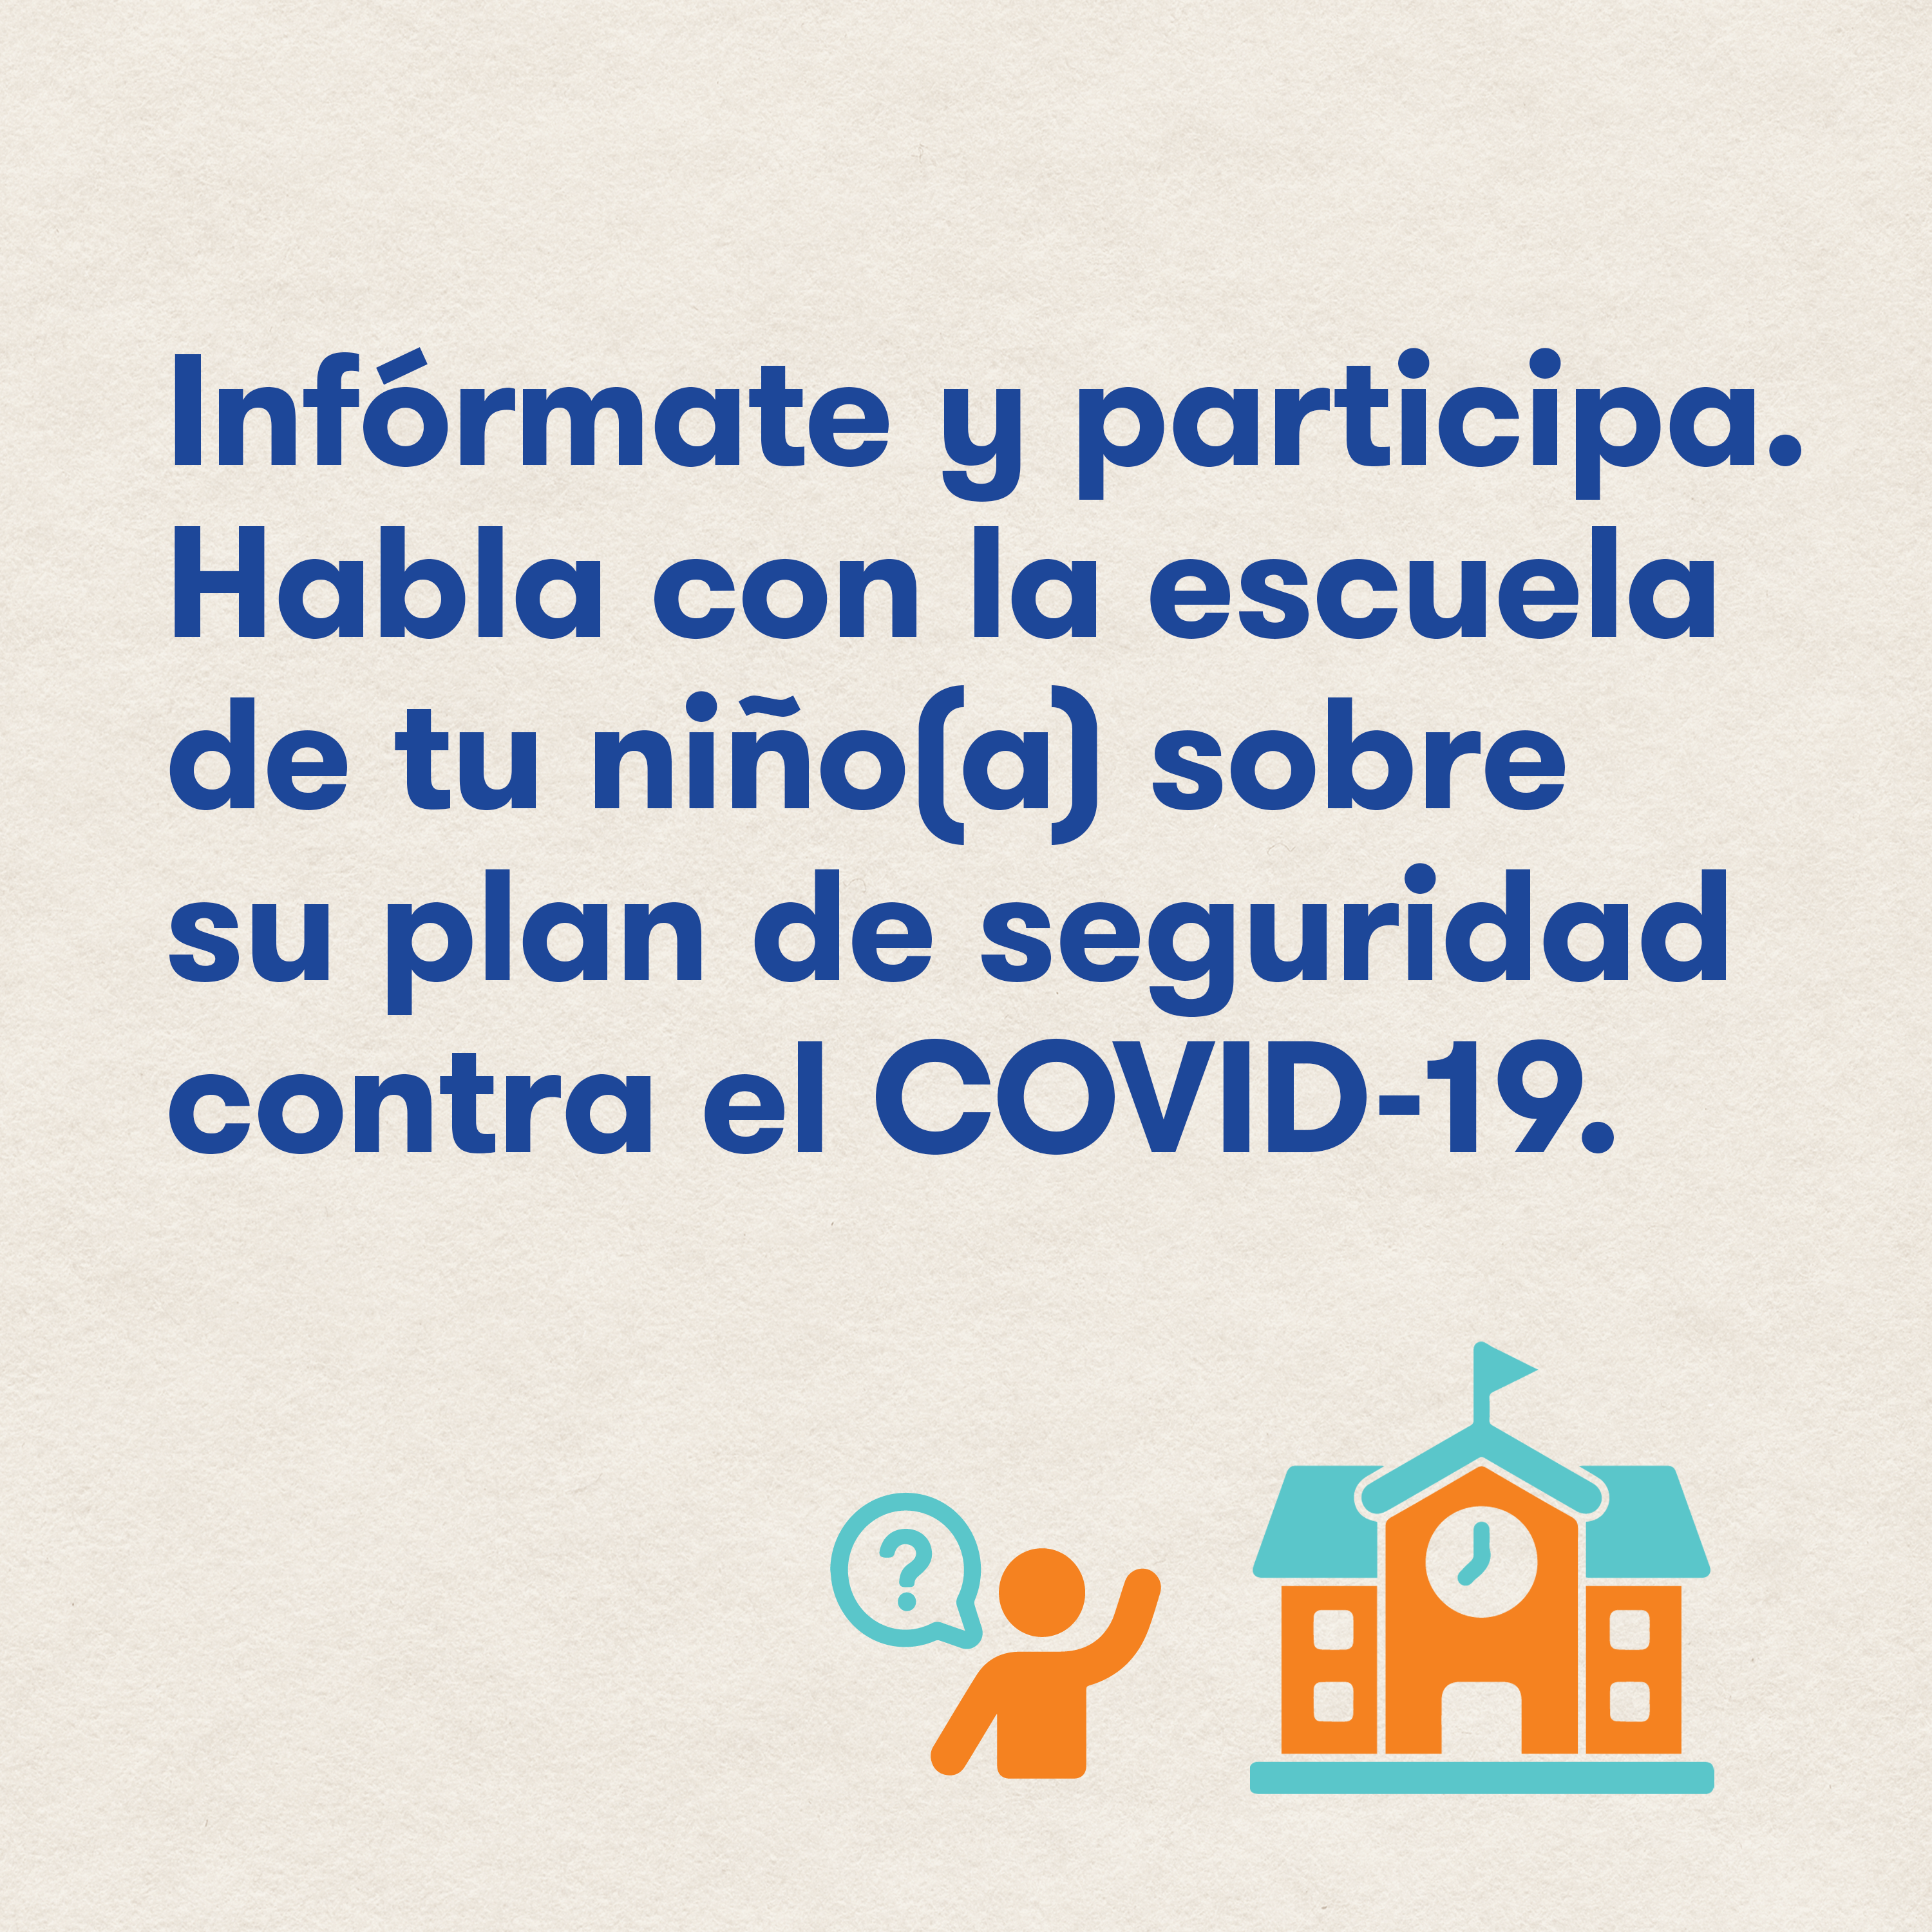 Infórmate y participa. Habla con la escuela de tu niño(a) sobre su plan de seguridad contra el COVID-19.